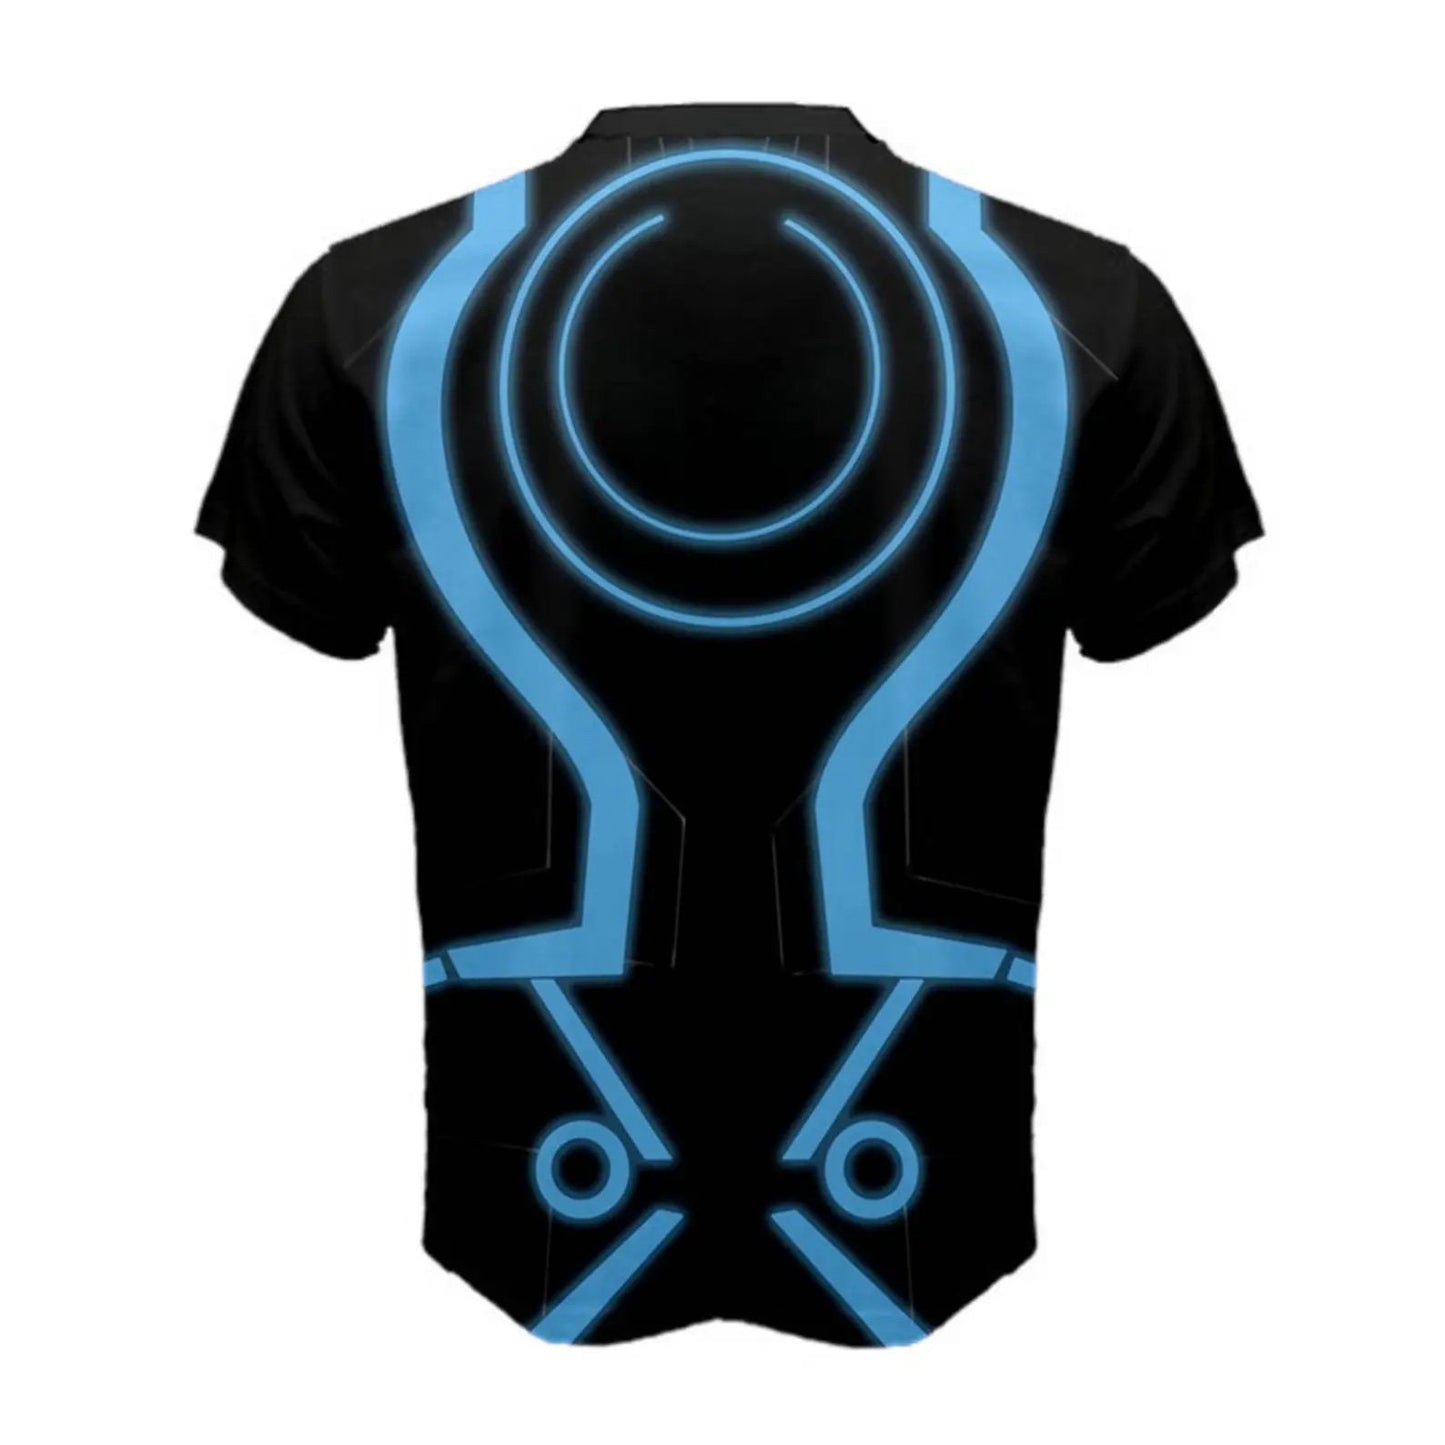 RUSH ORDER: Men's Tron Inspired ATHLETIC Shirt